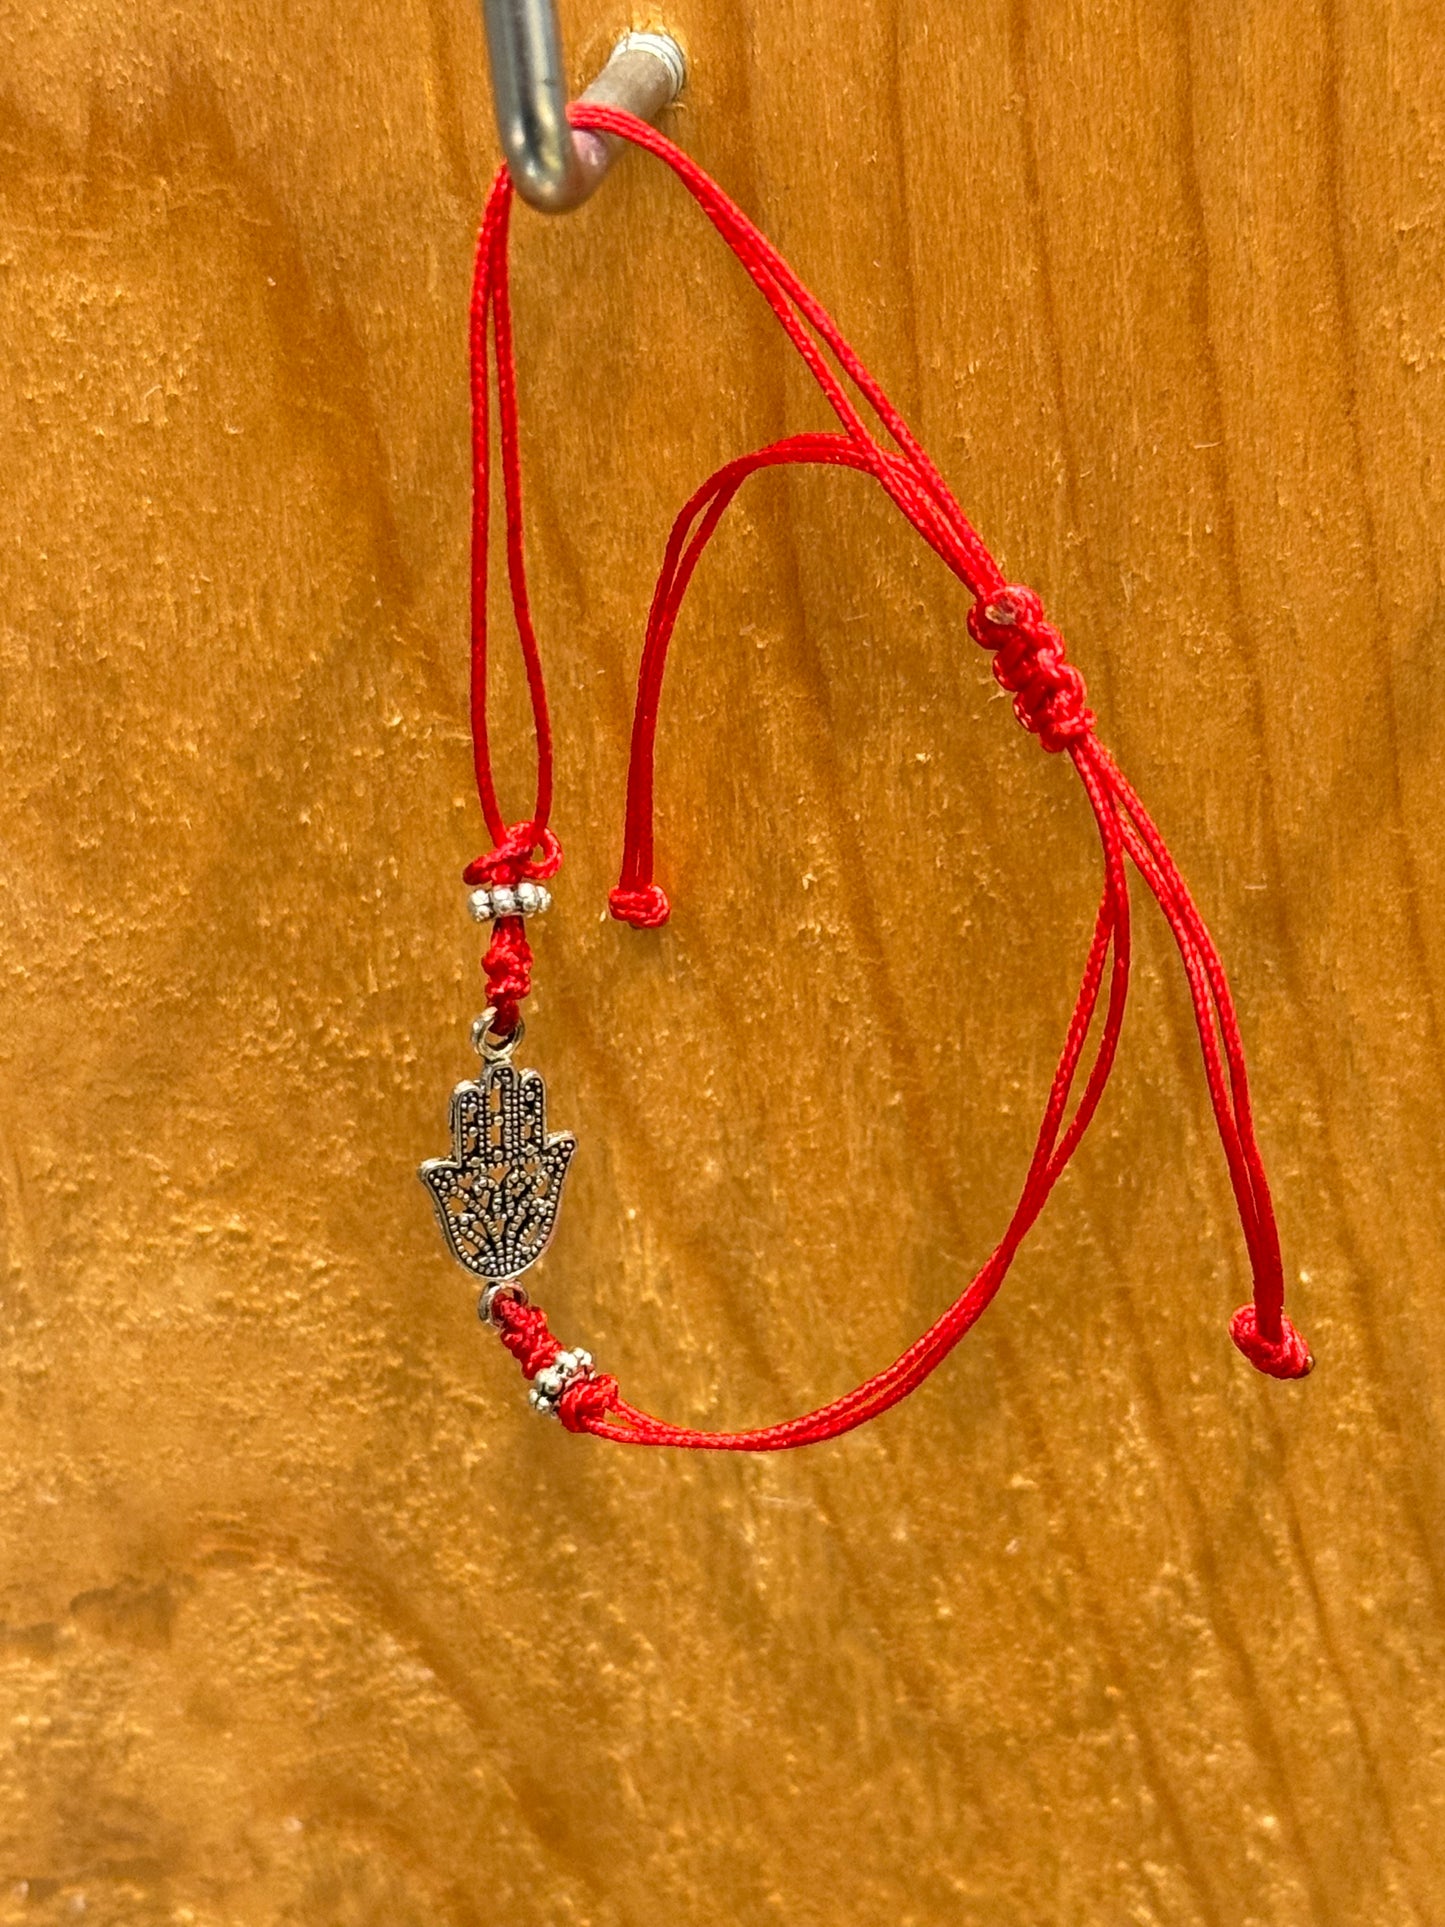 Red String Pull Tie Hamsa Talisman Charm Bracelet